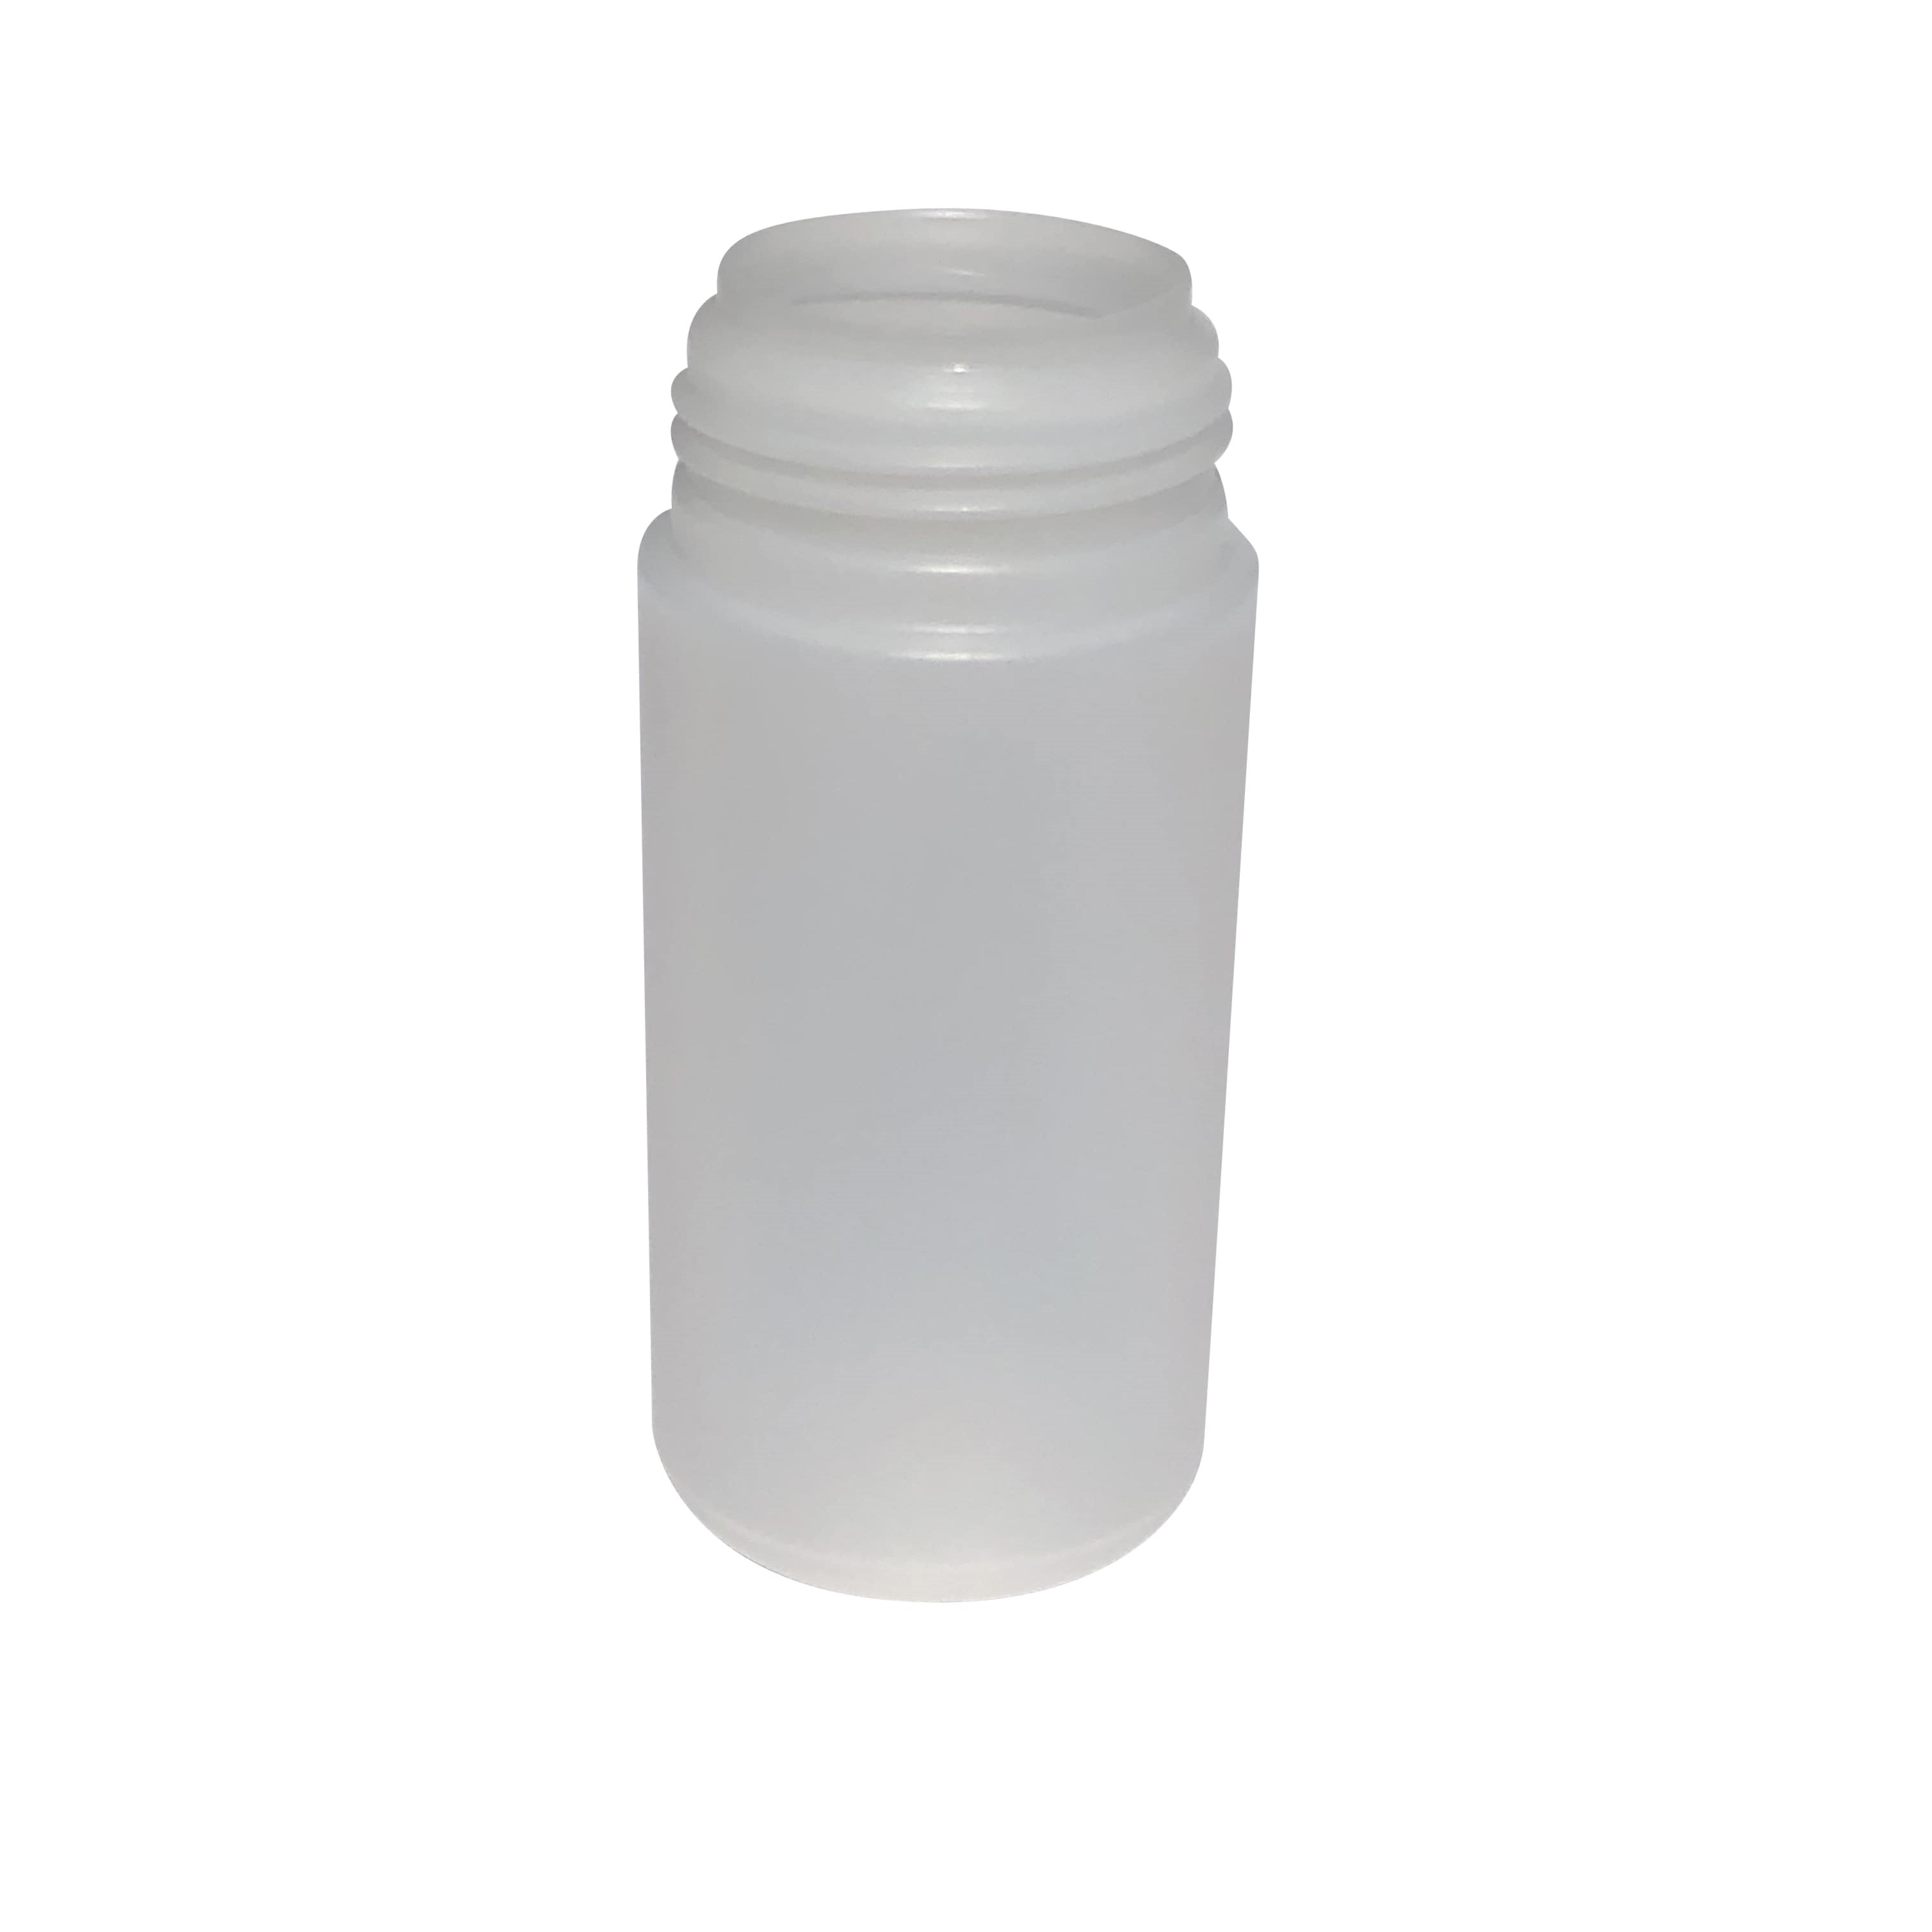 Dispenser cap for 100 ml 'Foamer', PP plastic, white, for opening: screw cap